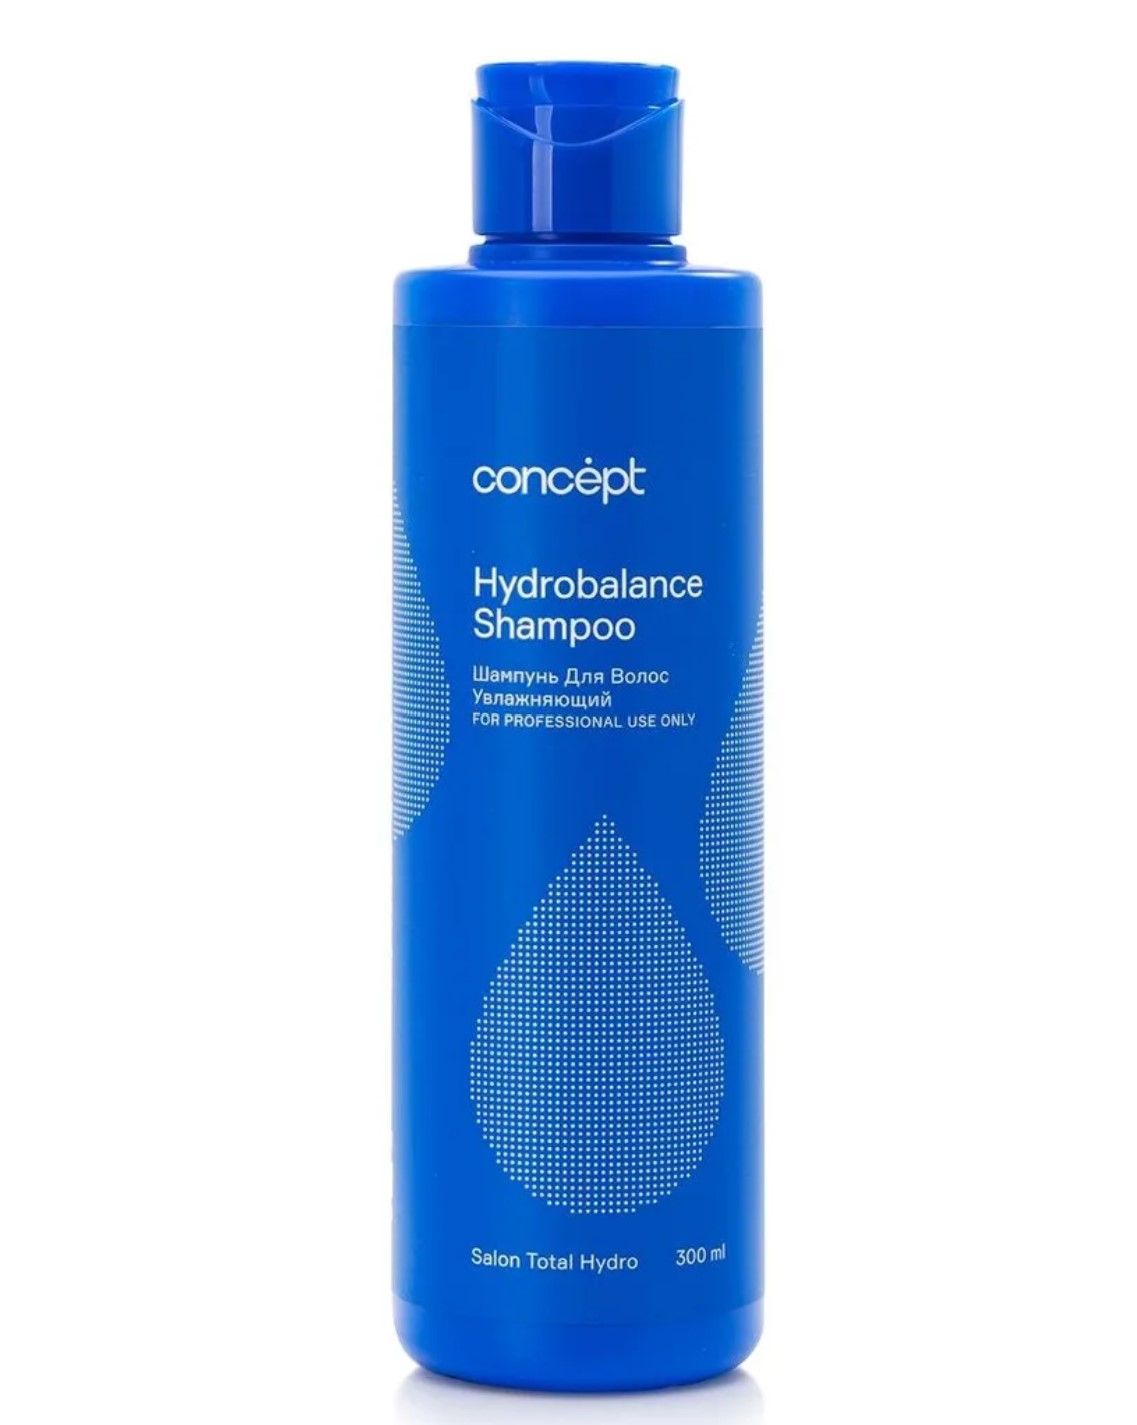 Concept шампунь увлажняющий. Concept шампунь увлажняющий Hydrobalance Shampoo. Concept шампунь увлажняющий Hydrobalance Shampoo 300 мл. Шампунь концепт с дозатором. Concept кондиционер для волос увлажняющий Hydrobalance.